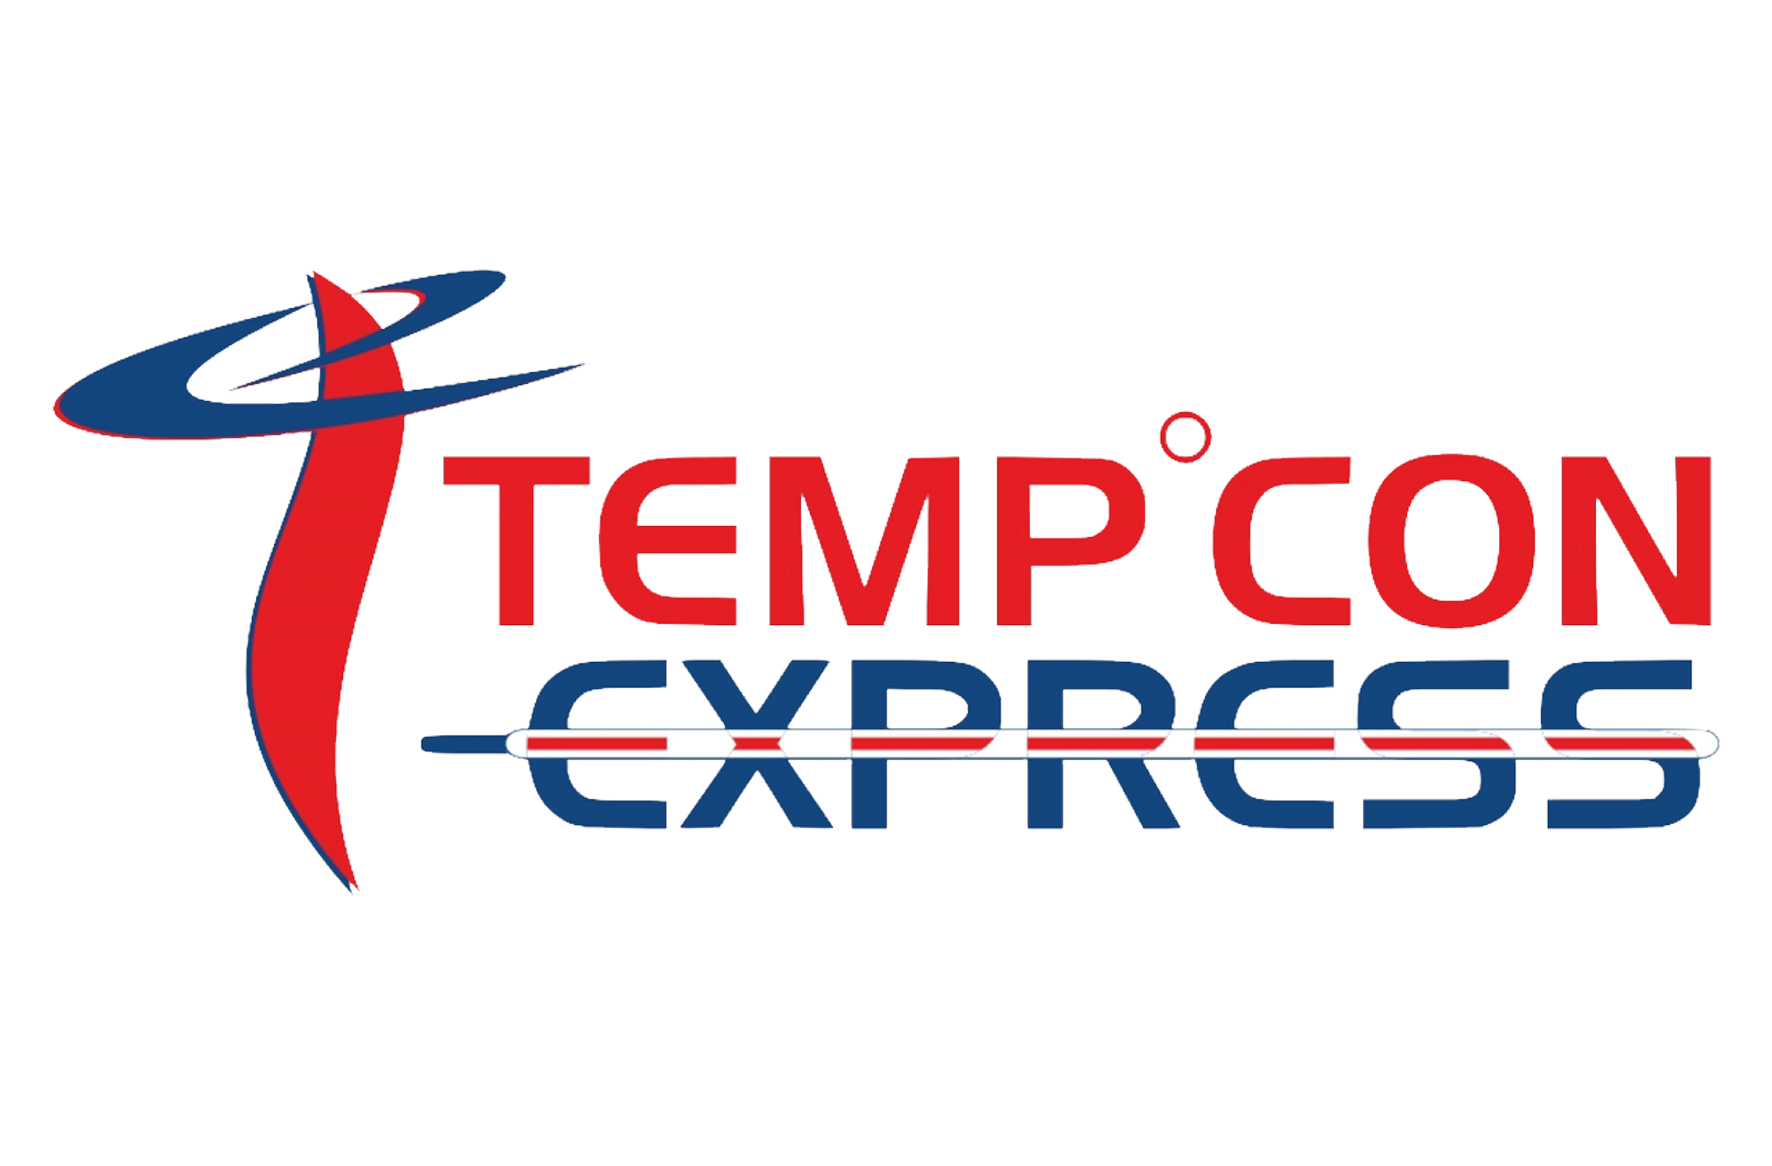 Temcon express